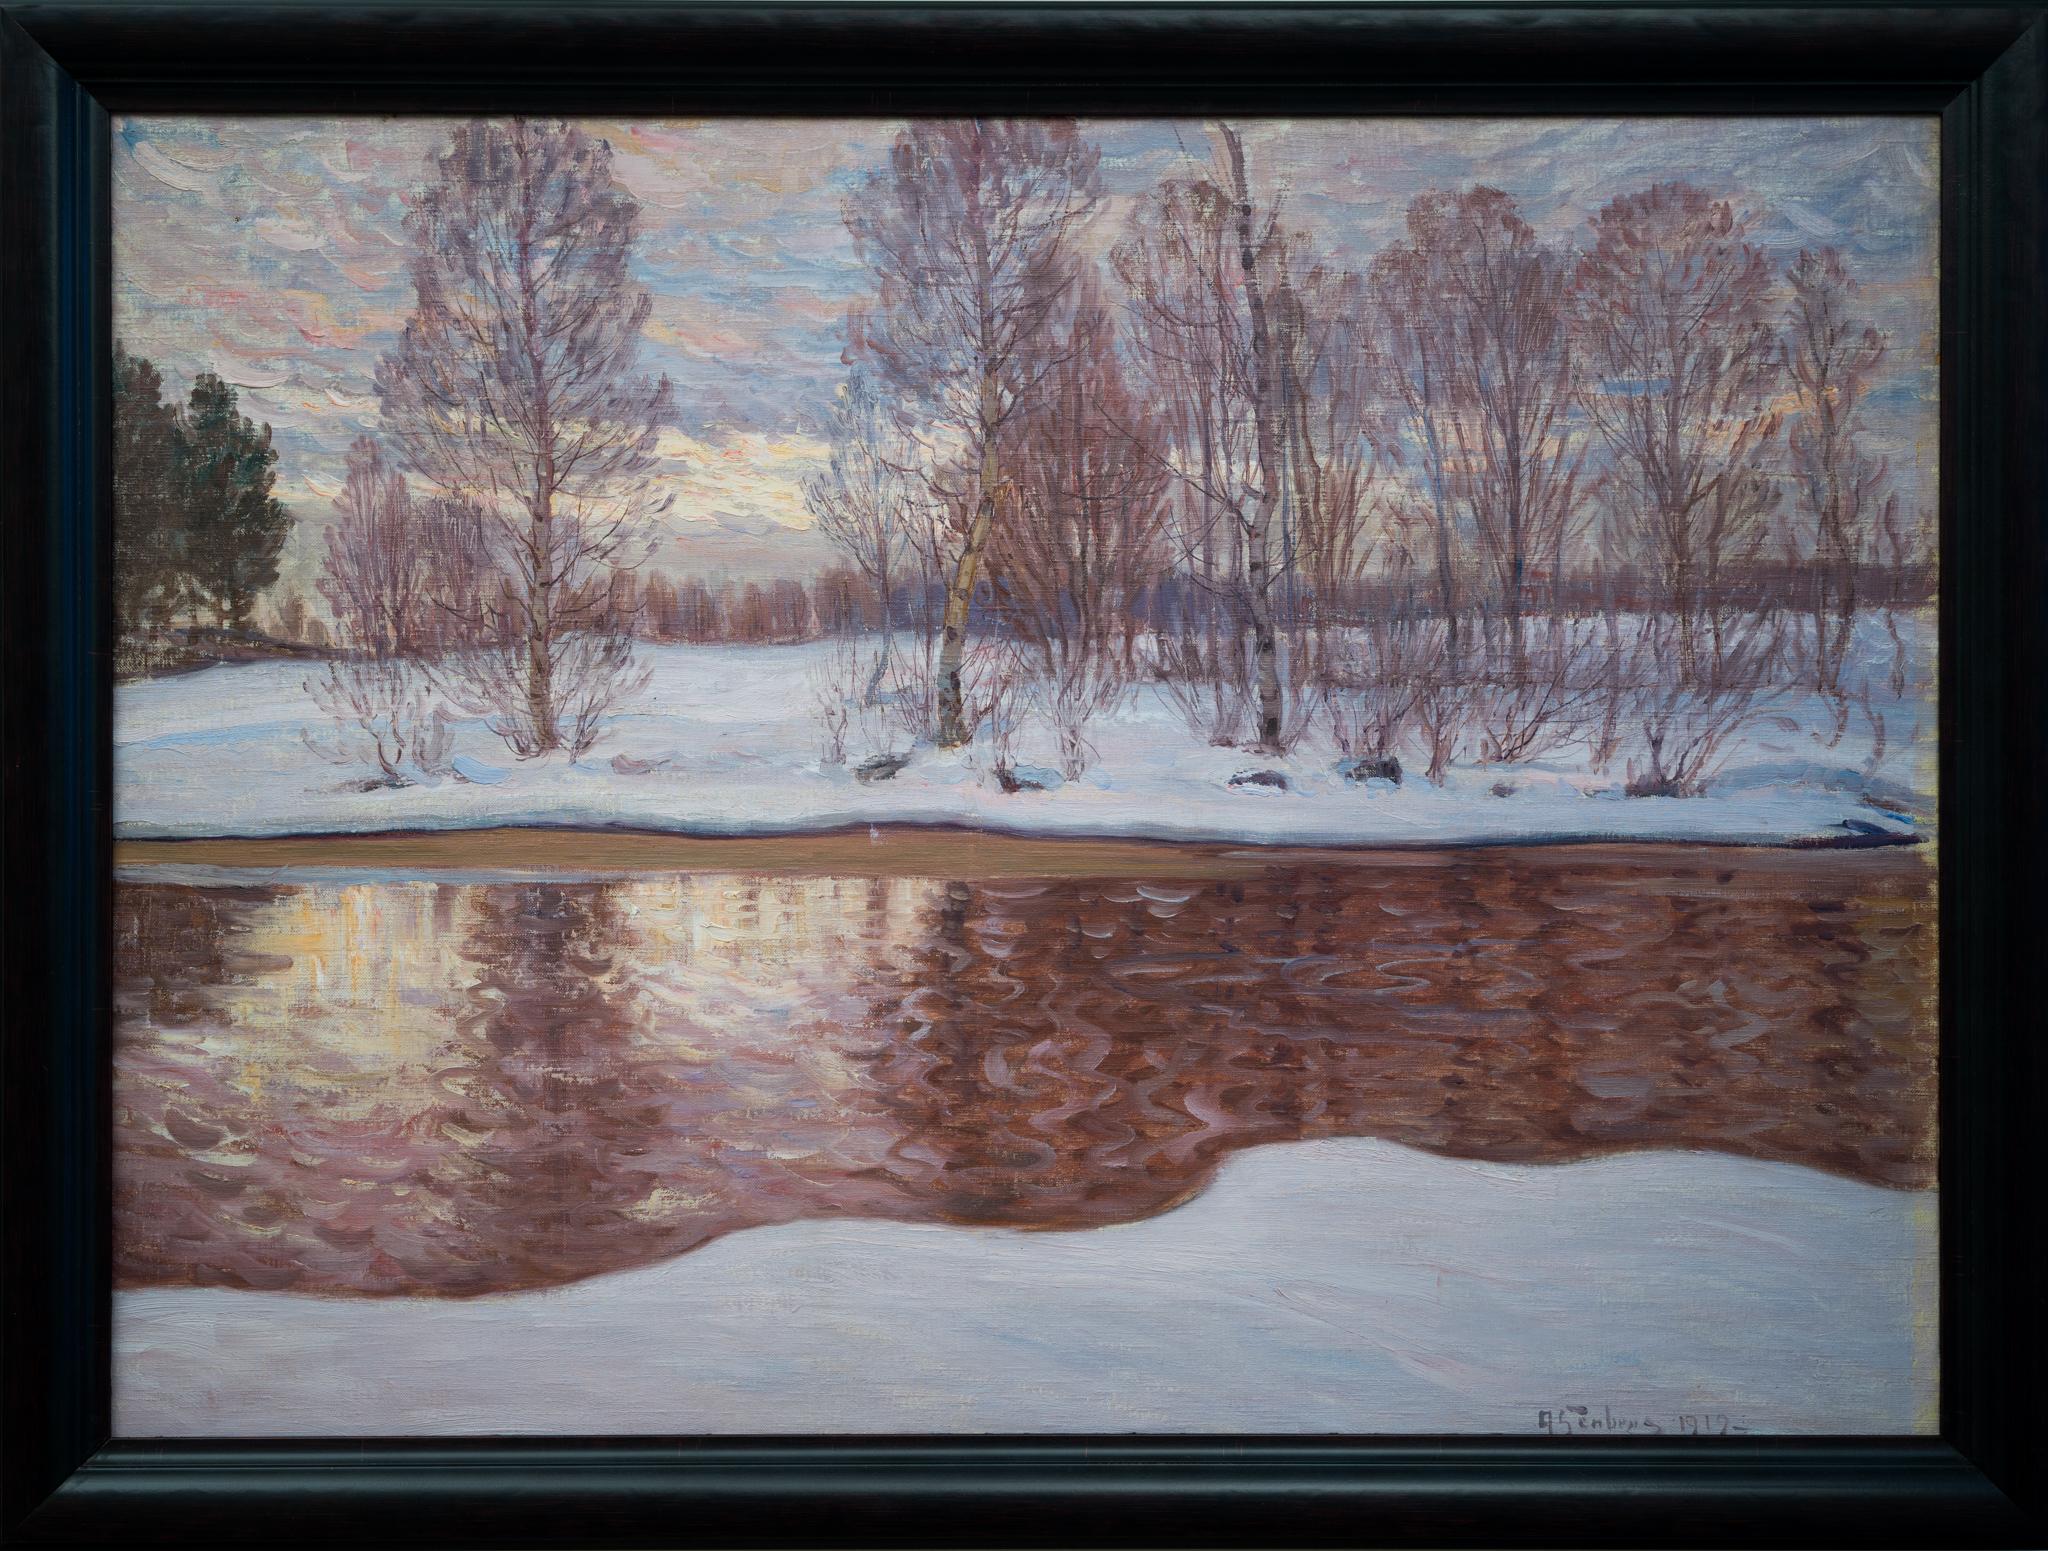 Wir haben die Ehre, eine bezaubernde Winterlandschaft von Anton Jonsson Genberg aus dem Jahr 1919 zum Verkauf anzubieten. Dieses Stück ist eine unverfälschte Darstellung von Genbergs künstlerischem Schaffen, der für seine naturalistischen